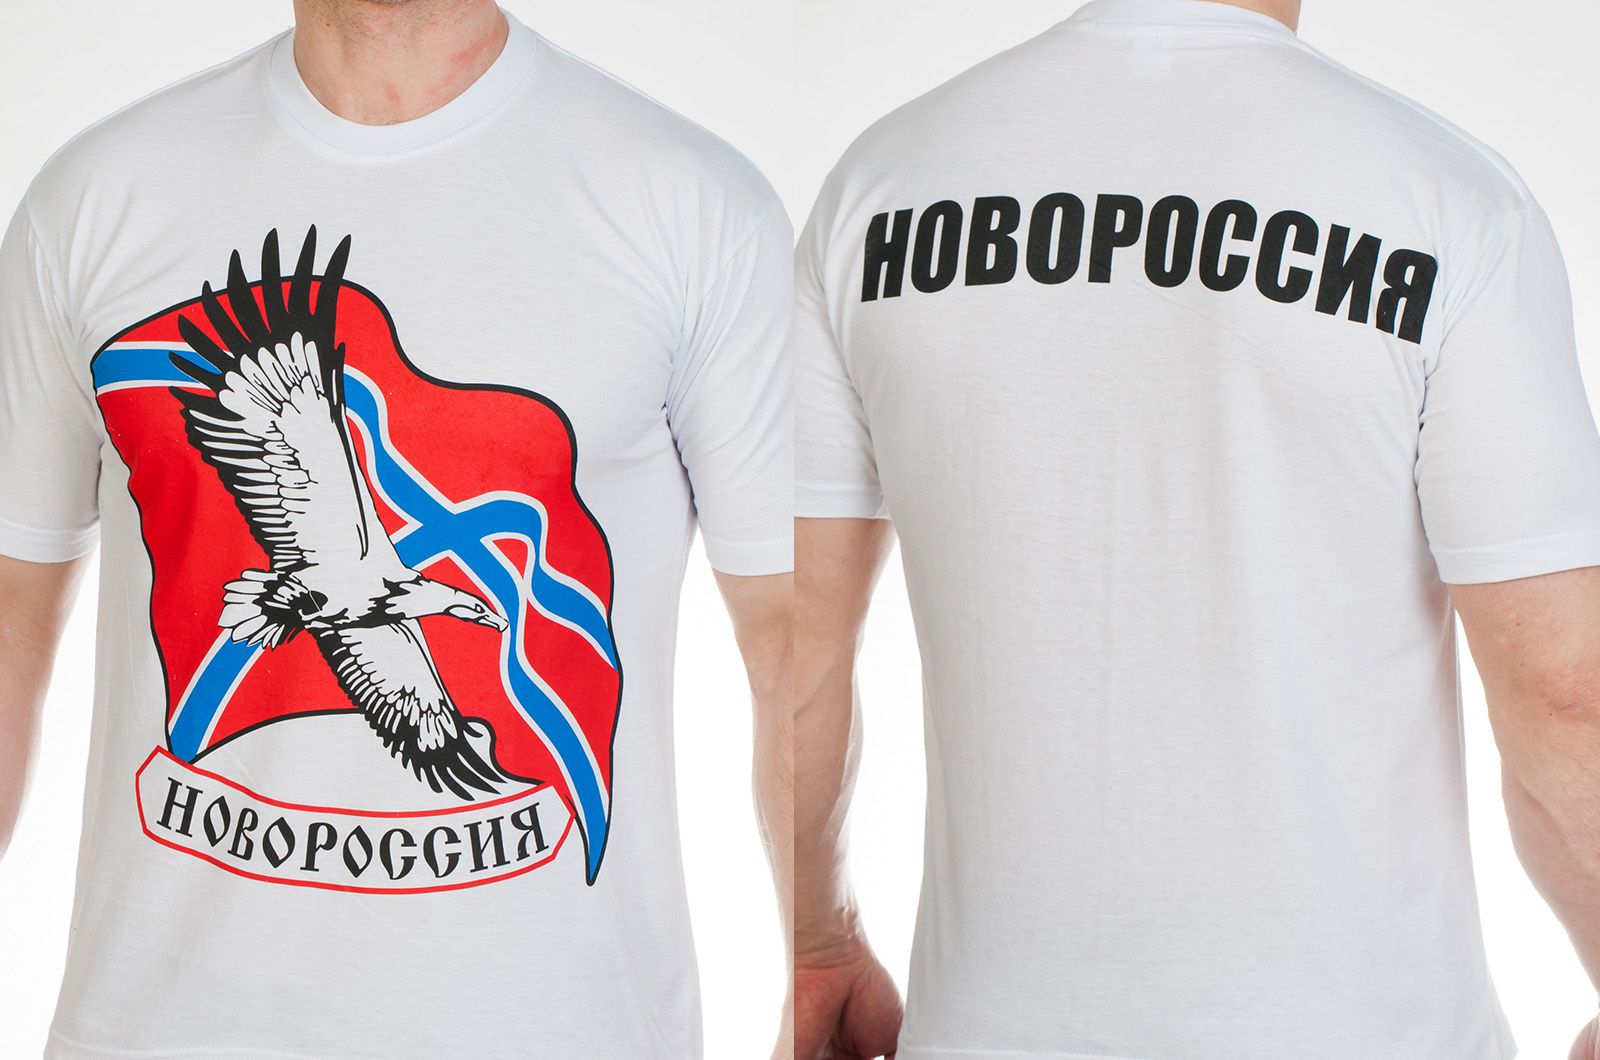 Заказать футболку с надписью «Новороссия» с доставкой